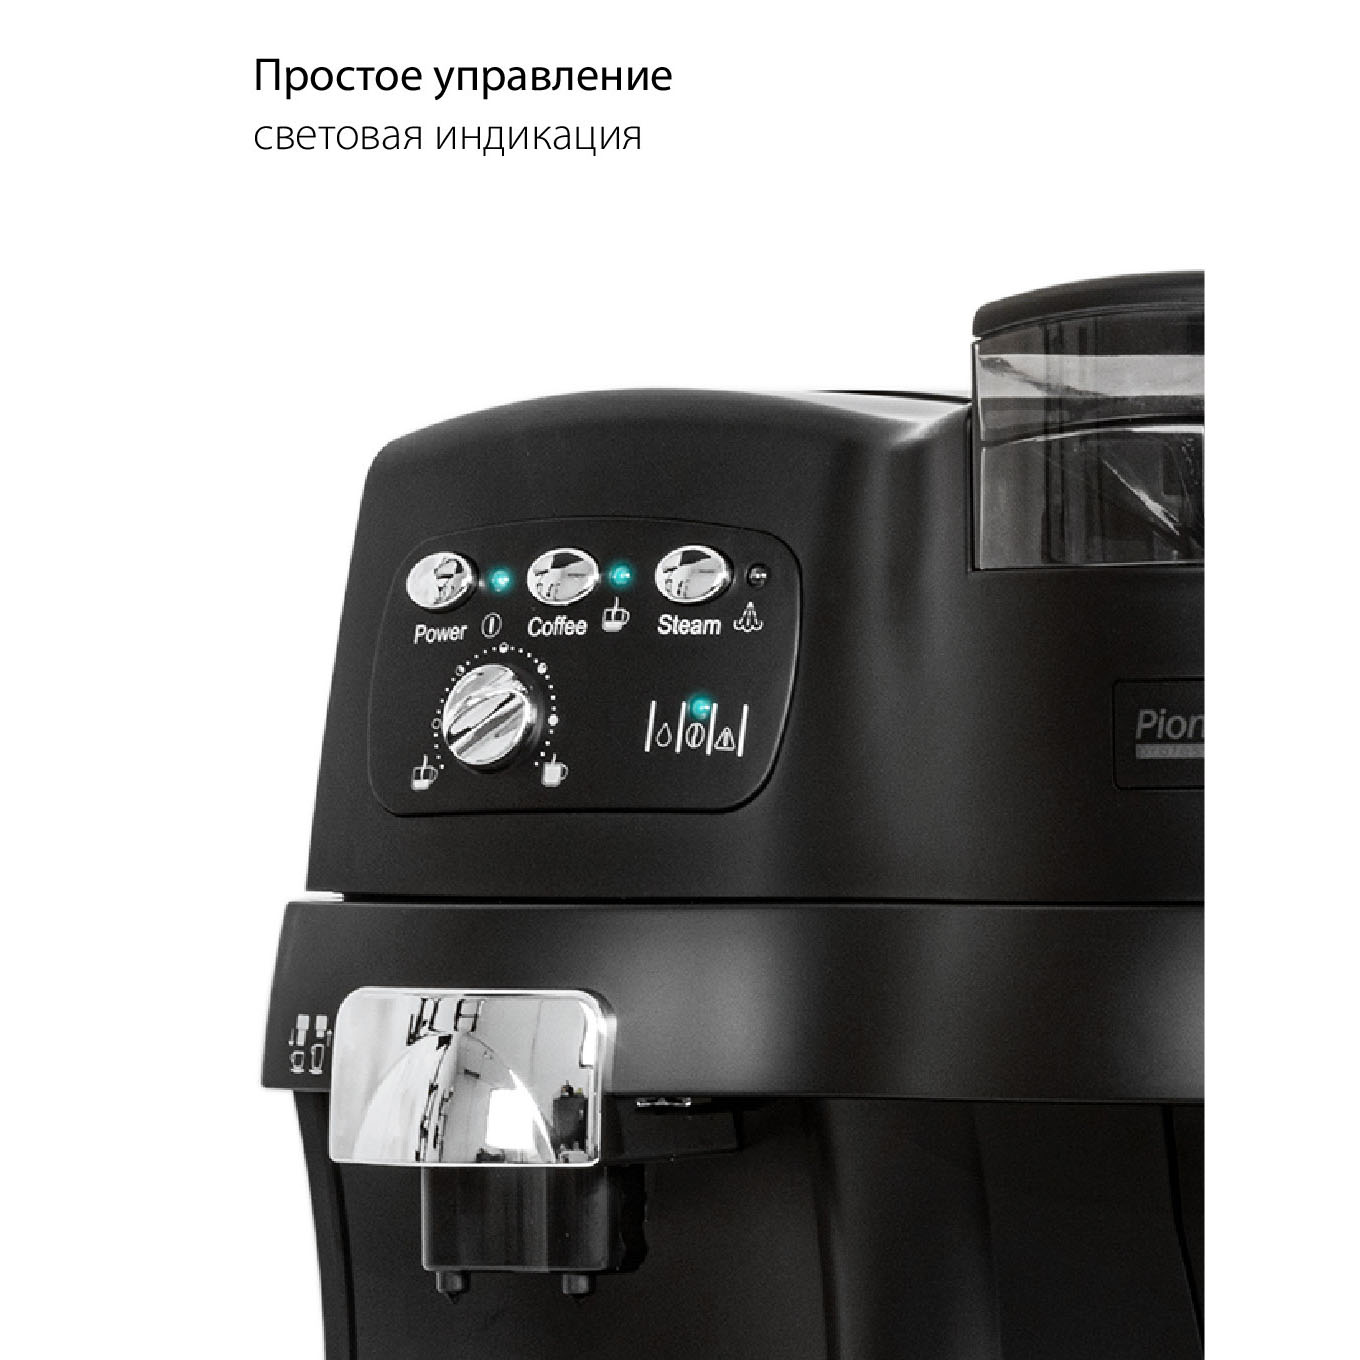 Автоматическая кофемашина Pioneer CMA001  в официальном магазине .